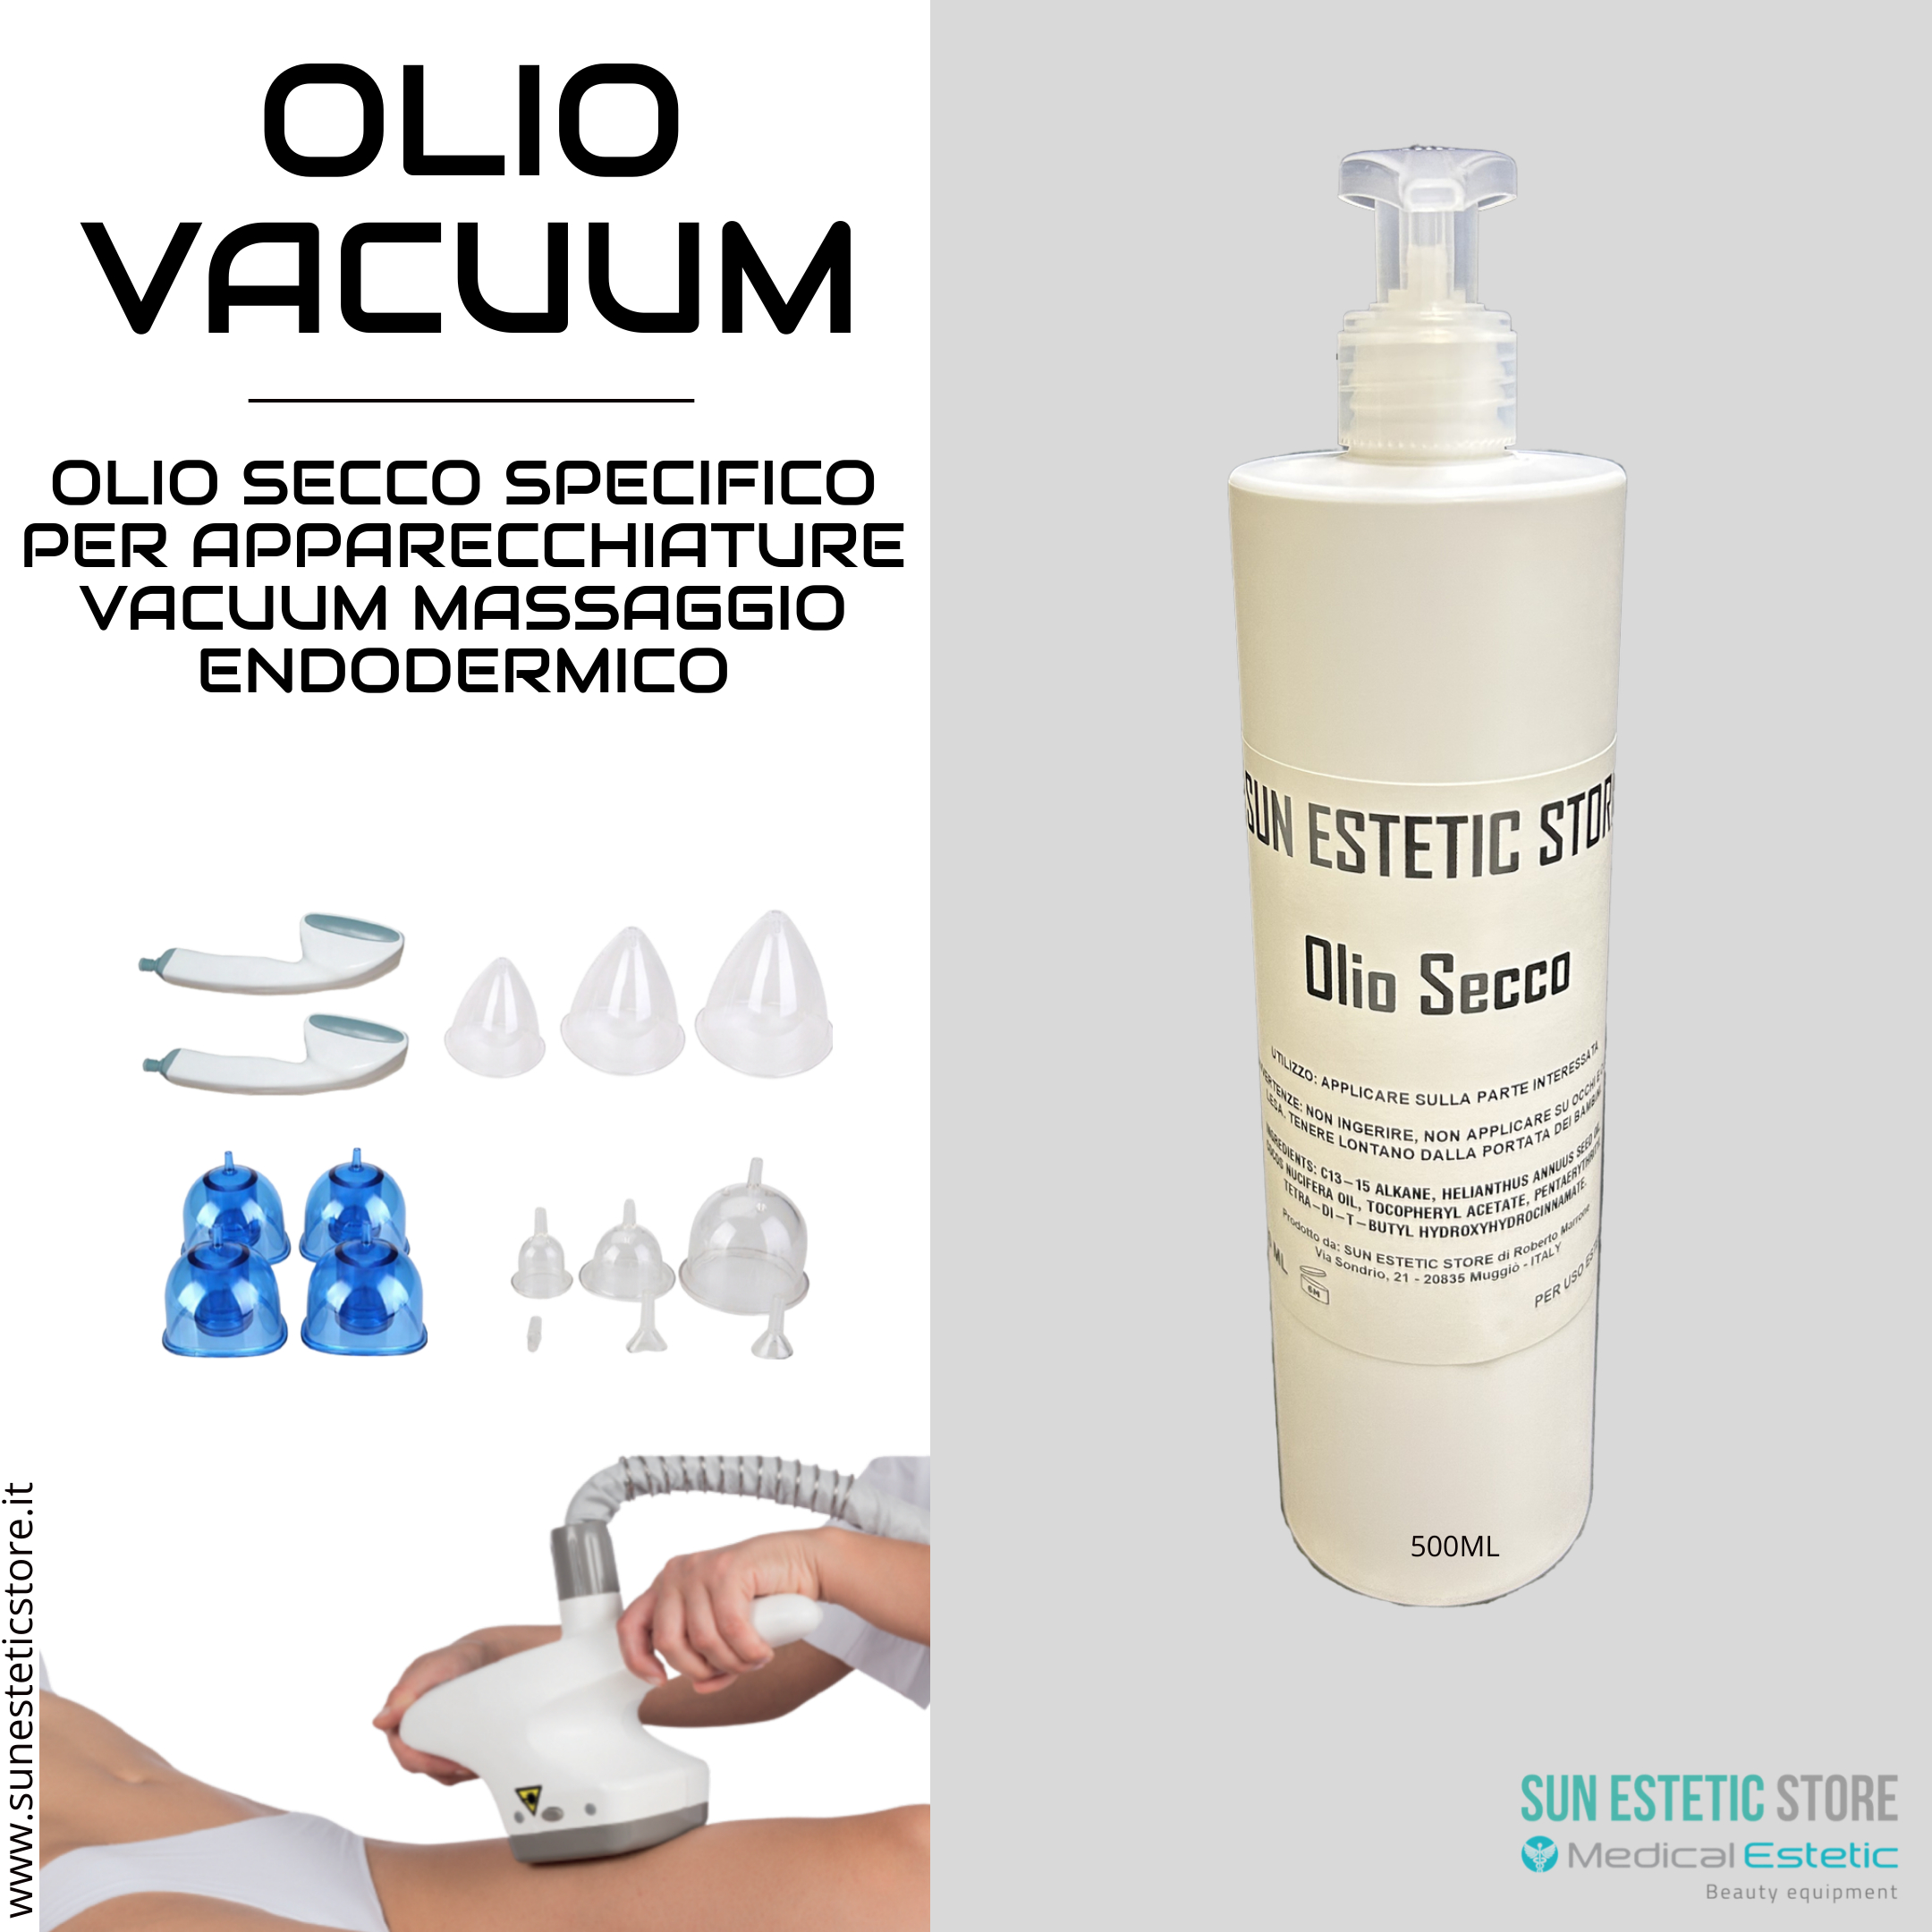 Olio secco vacuum prodotto specifico per apparecchiature massaggio